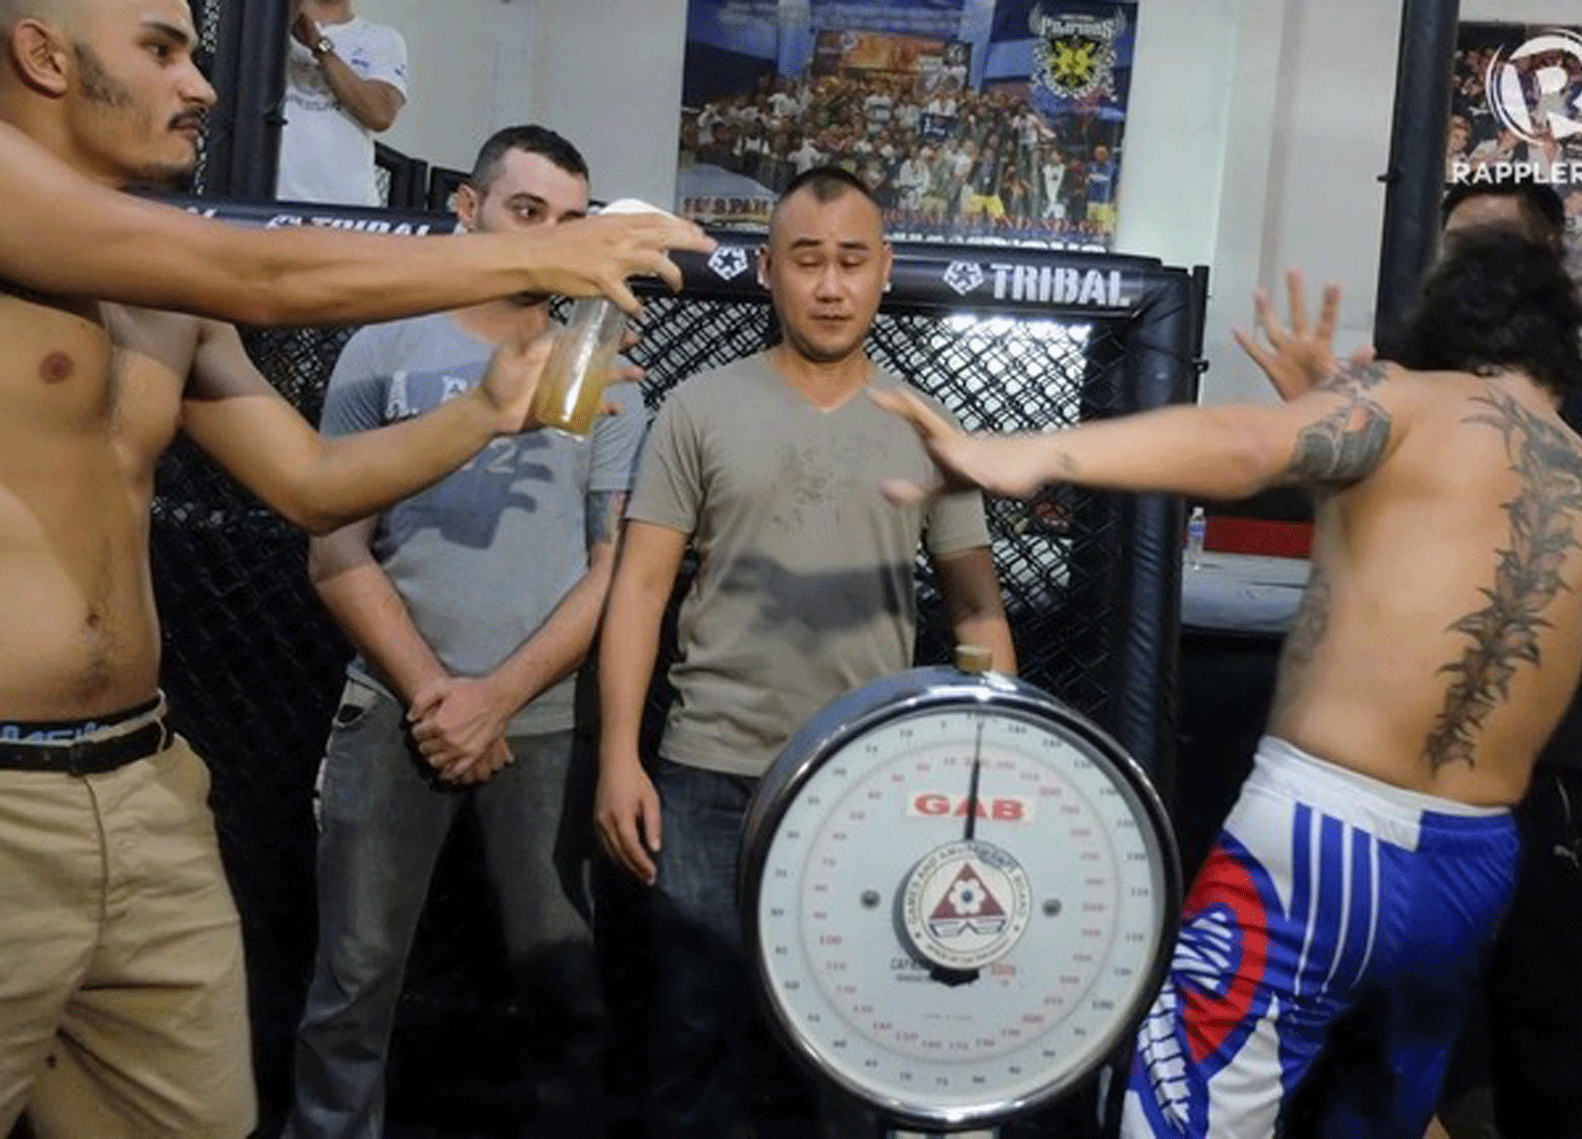 VIES: MMA-vechter spuit urine in gezicht tegenstander (video)